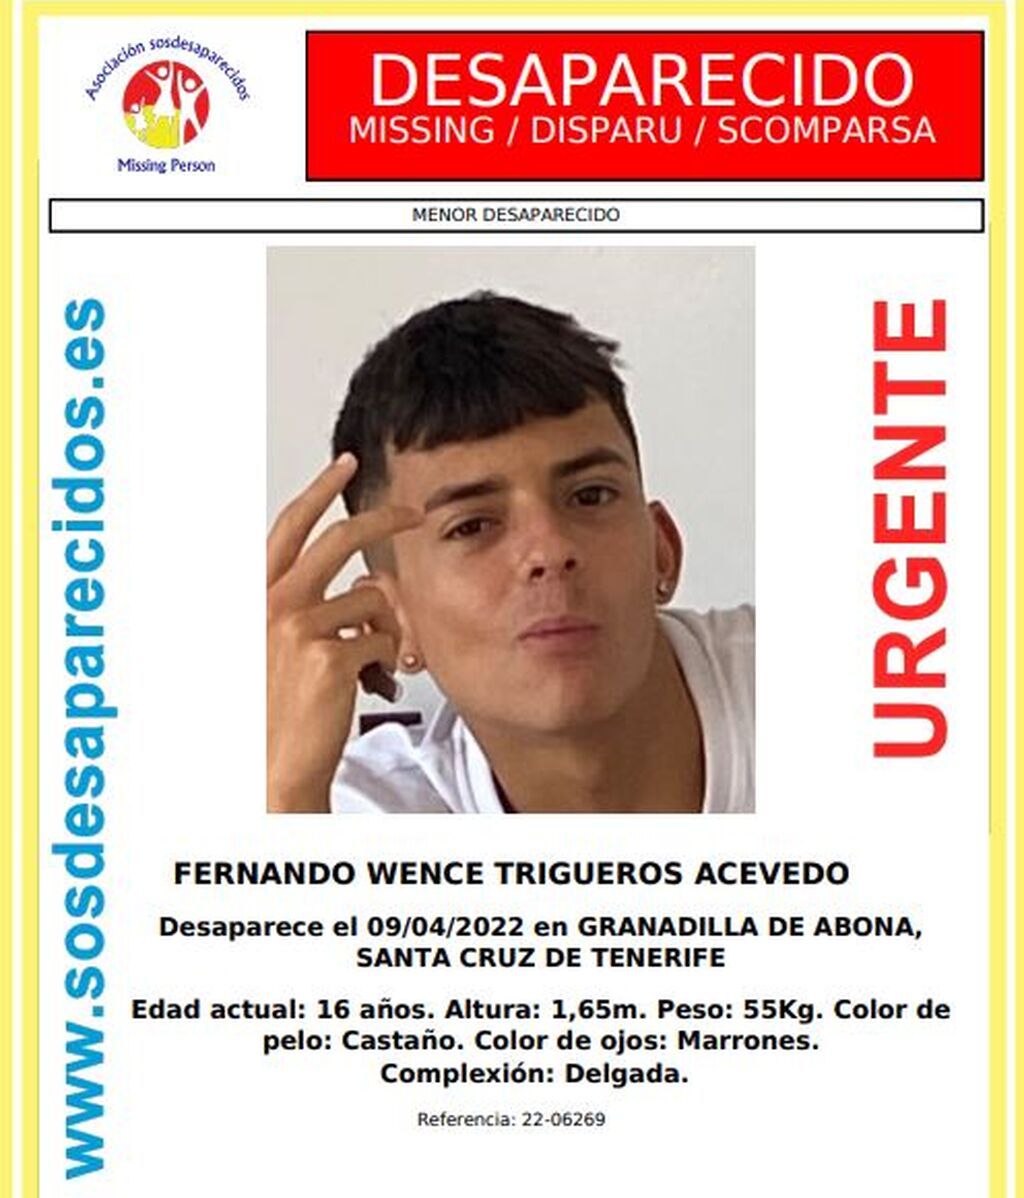 Fernando Wence Trigueros Acevedo, de 16 años, menor desaparecido en Granadilla de Abona